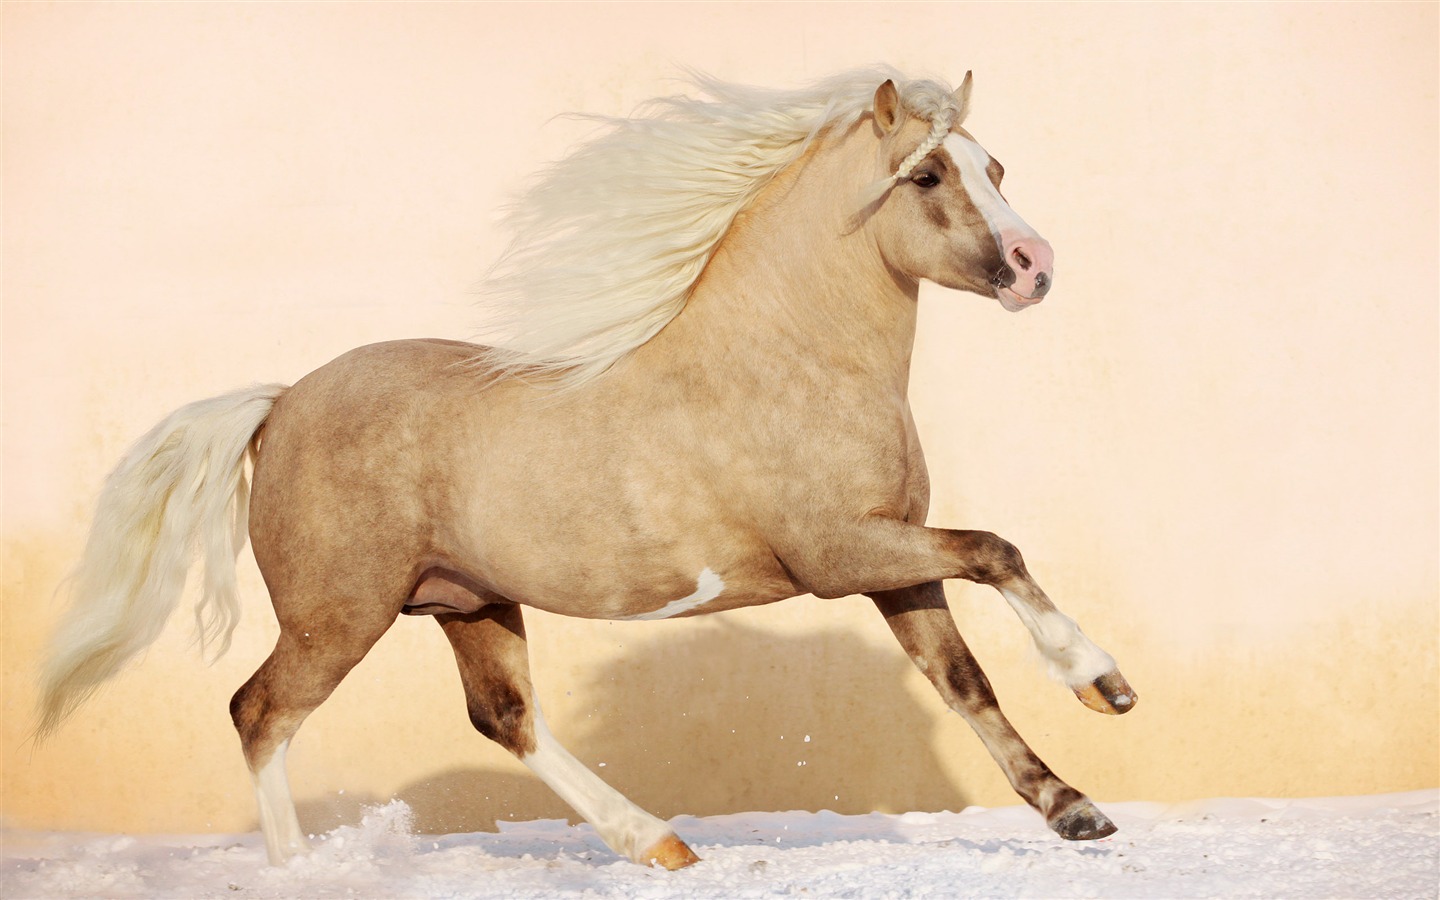 Super horse photo wallpaper (1) #10 - 1440x900